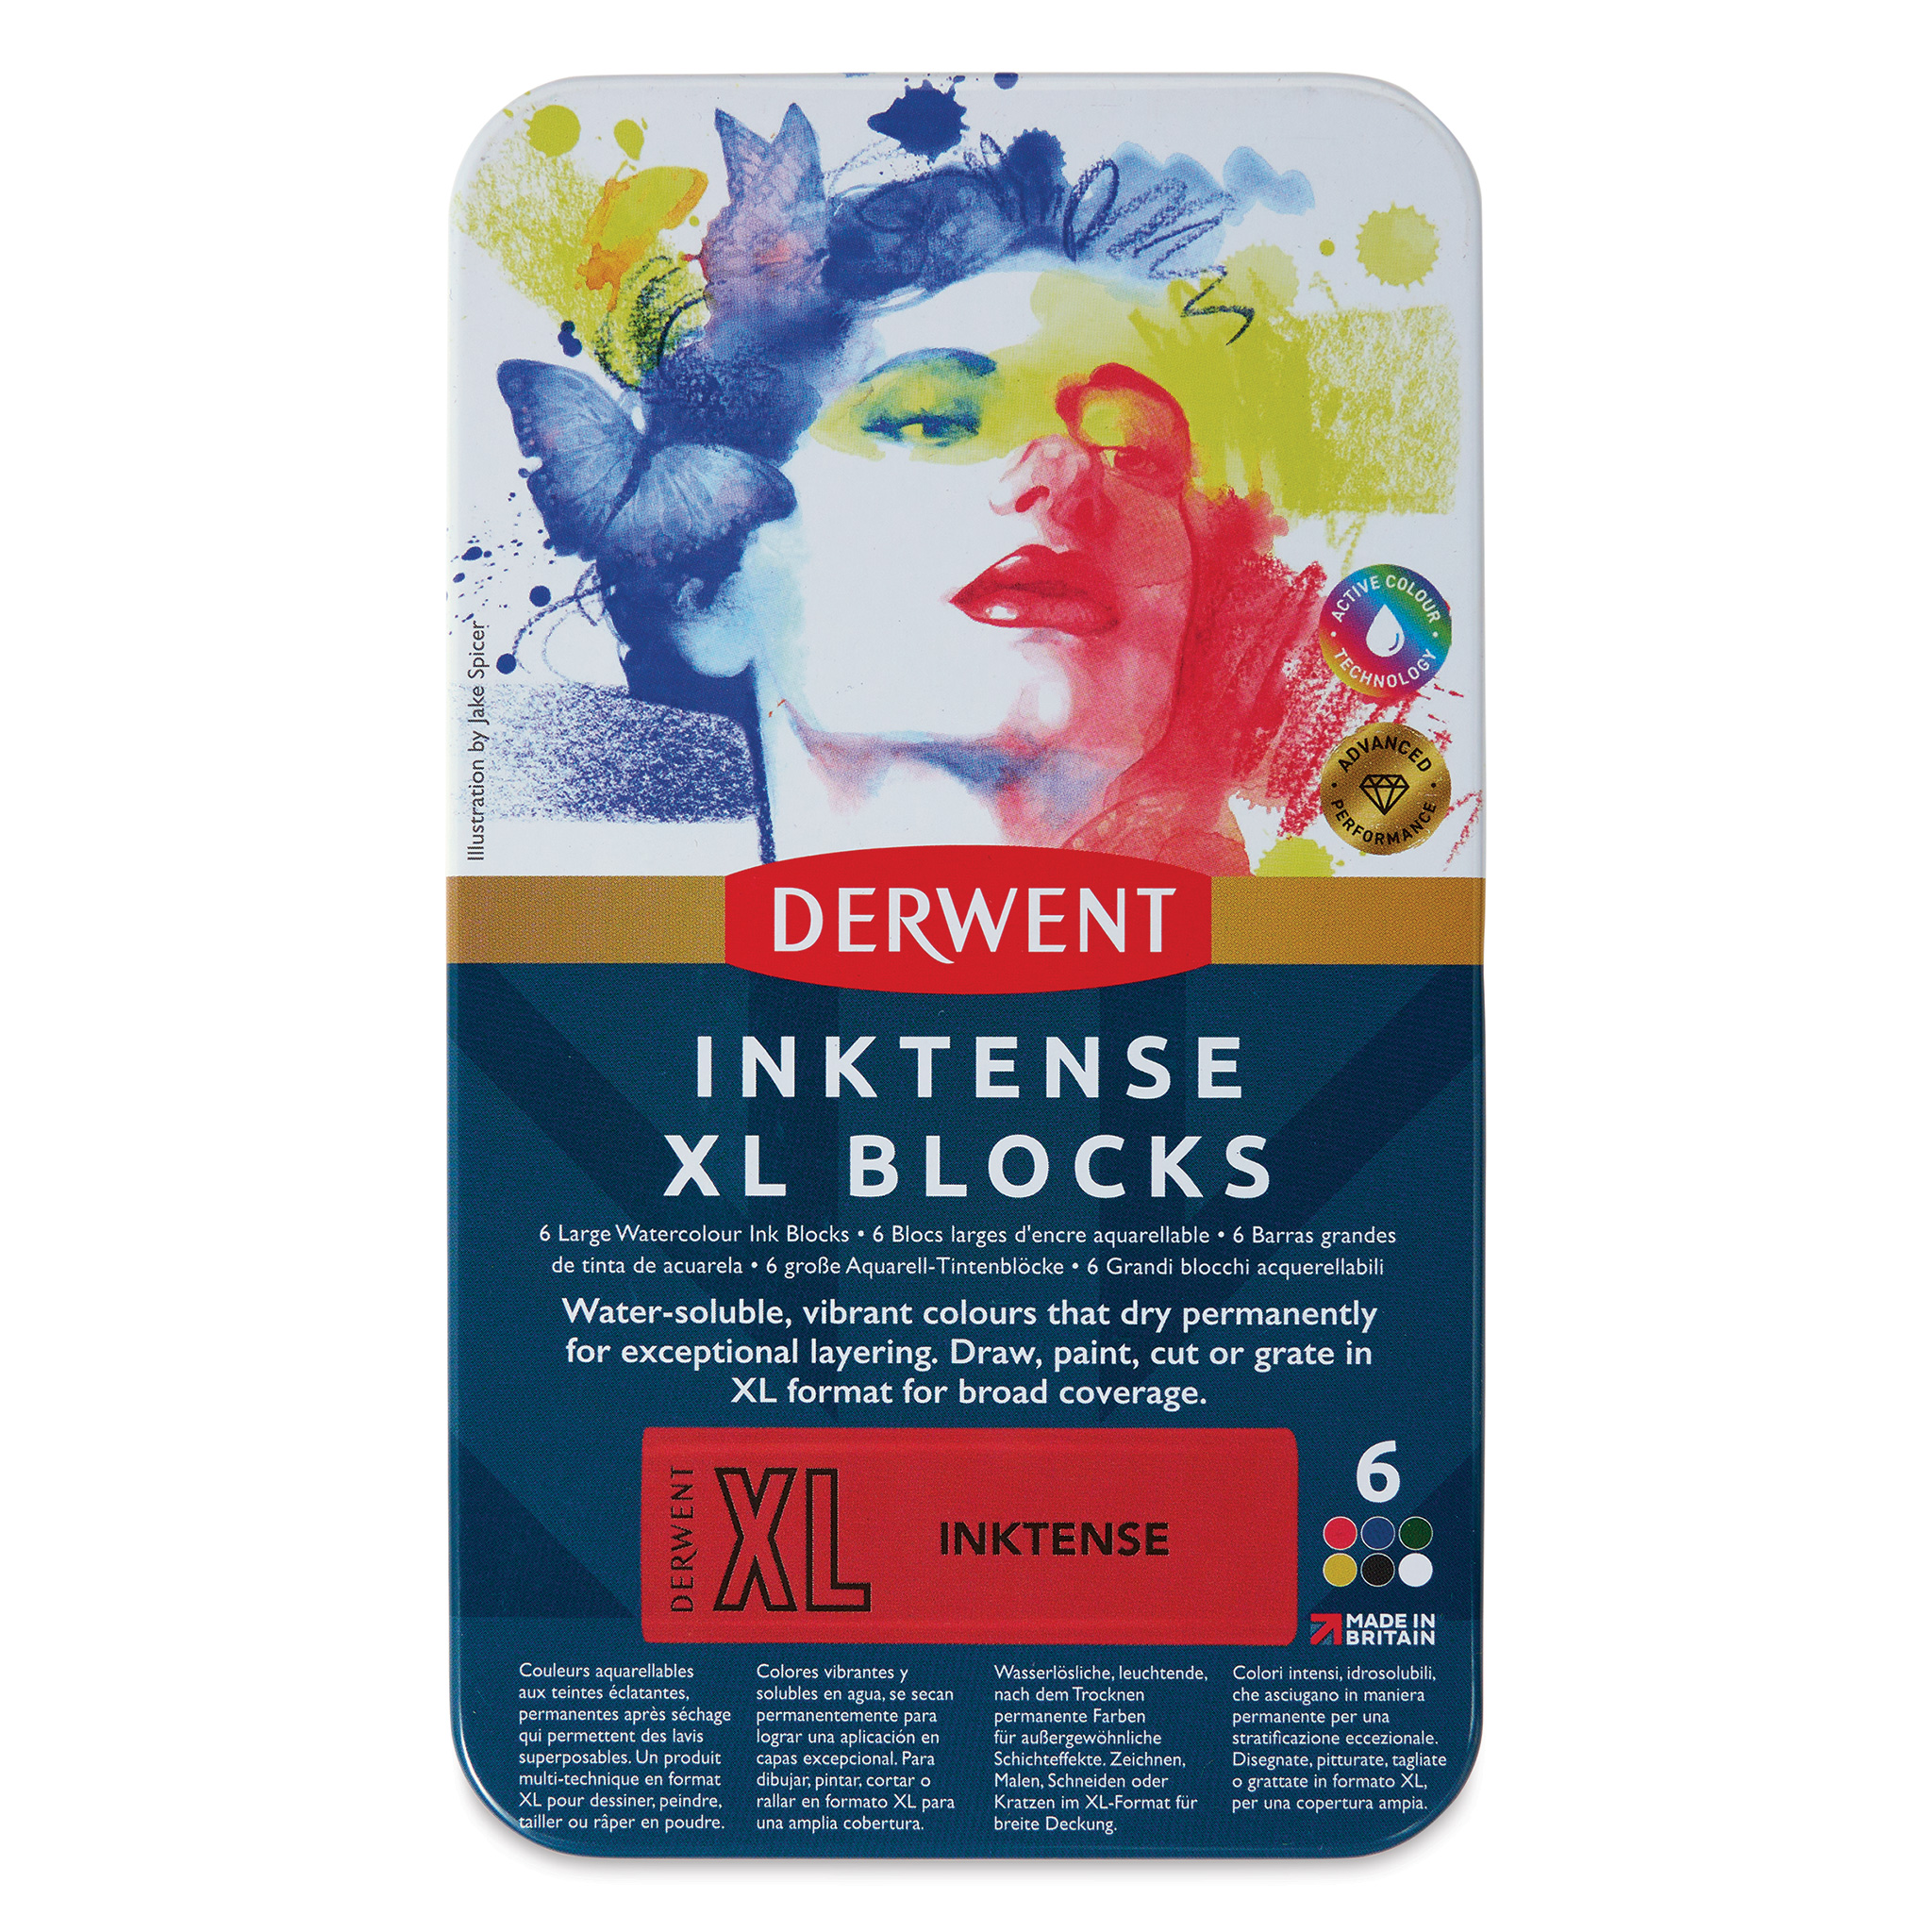 Derwent Inktense XL Blocks and Sets